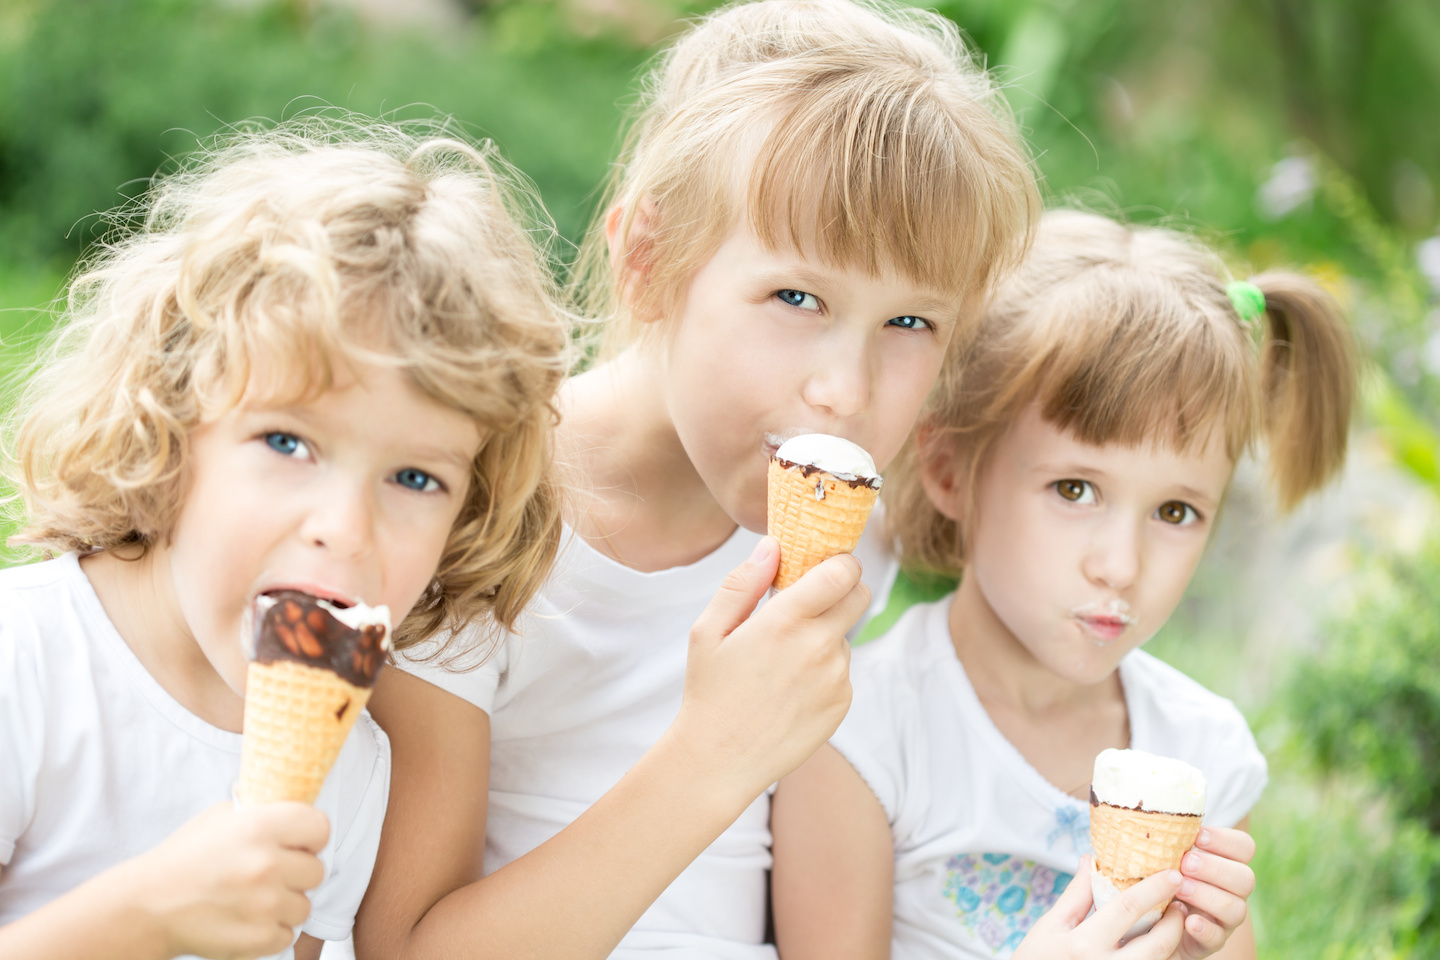 Вкусно ест мороженое. Ребенок с мороженым. Дети с мороженым в парке. Дети едят мороженое картинки. Девочка в парке с мороженым.